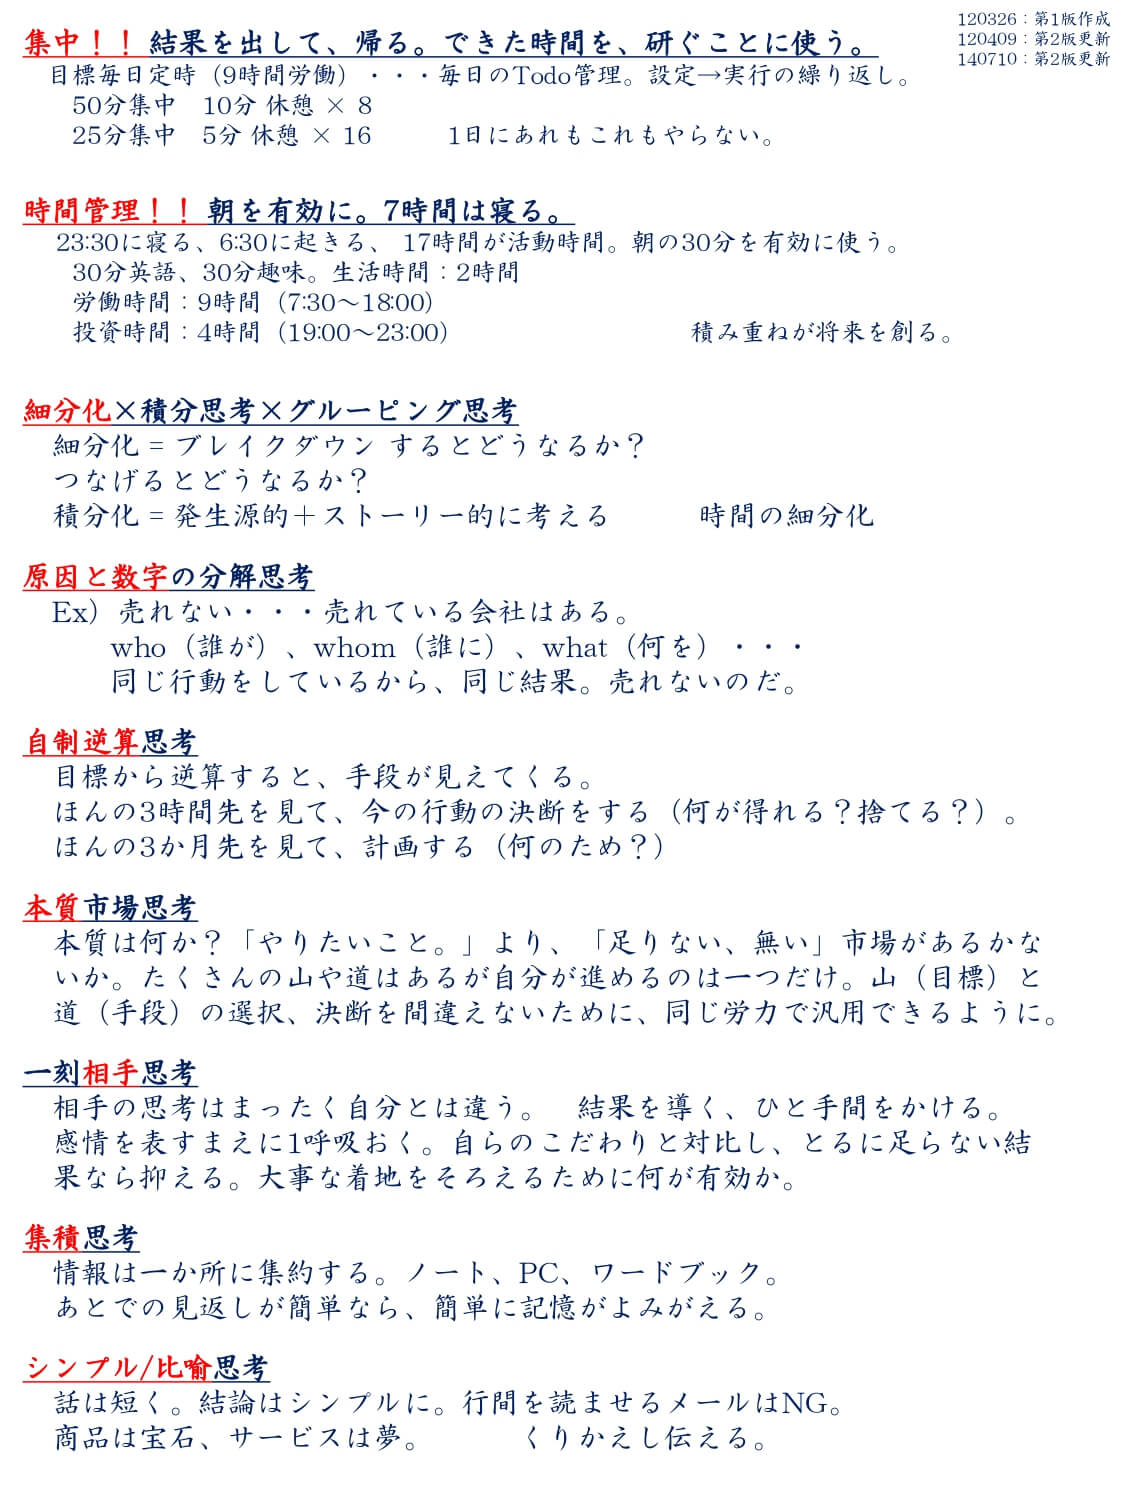 /data_fukuta/image_pdf/120326_desktop